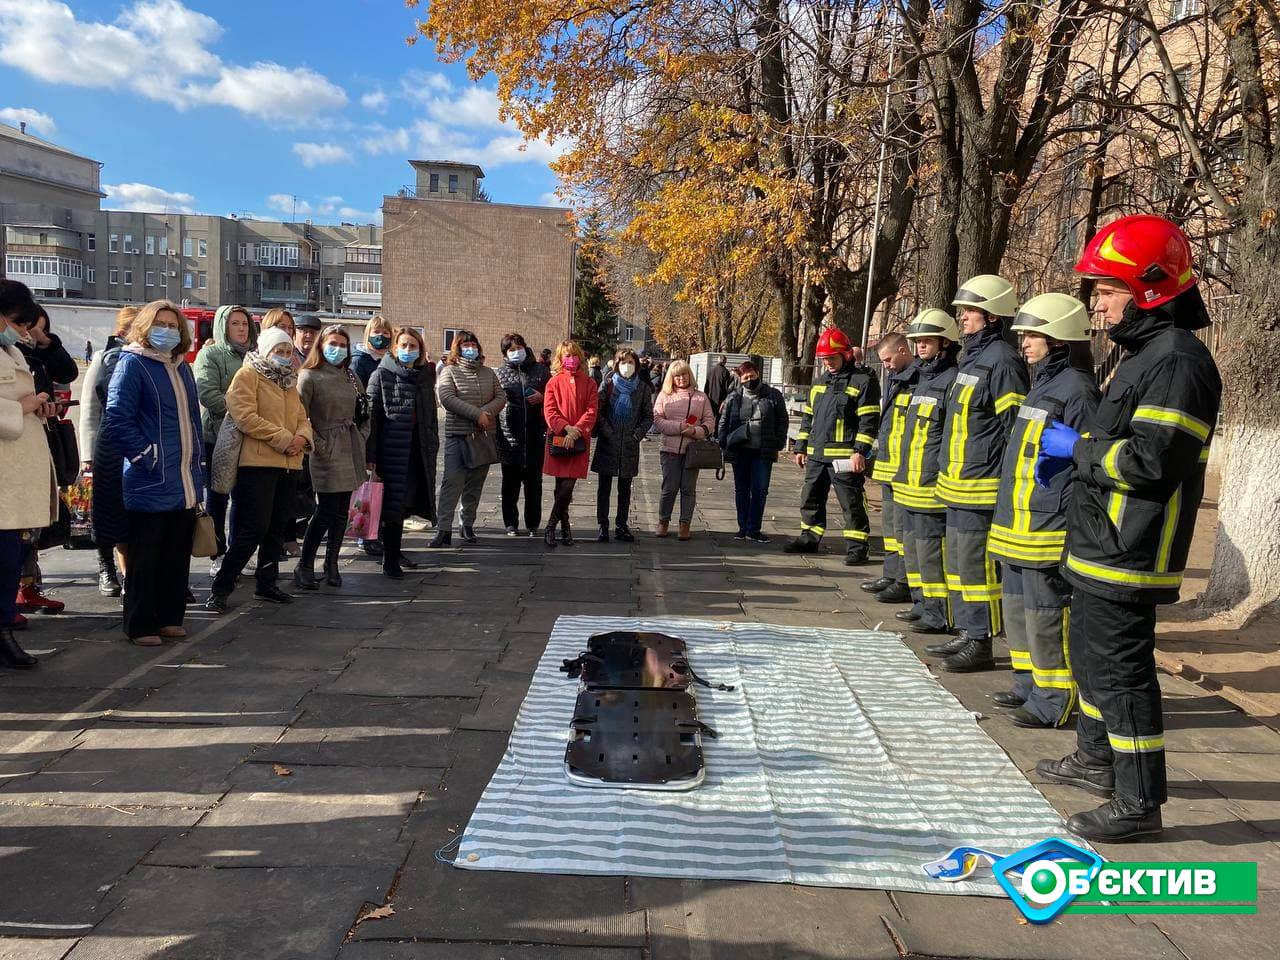 Как пользоваться огнетушителем и сделать непрямой массаж сердца: в Харькове спасатели провели "урок" для учителей